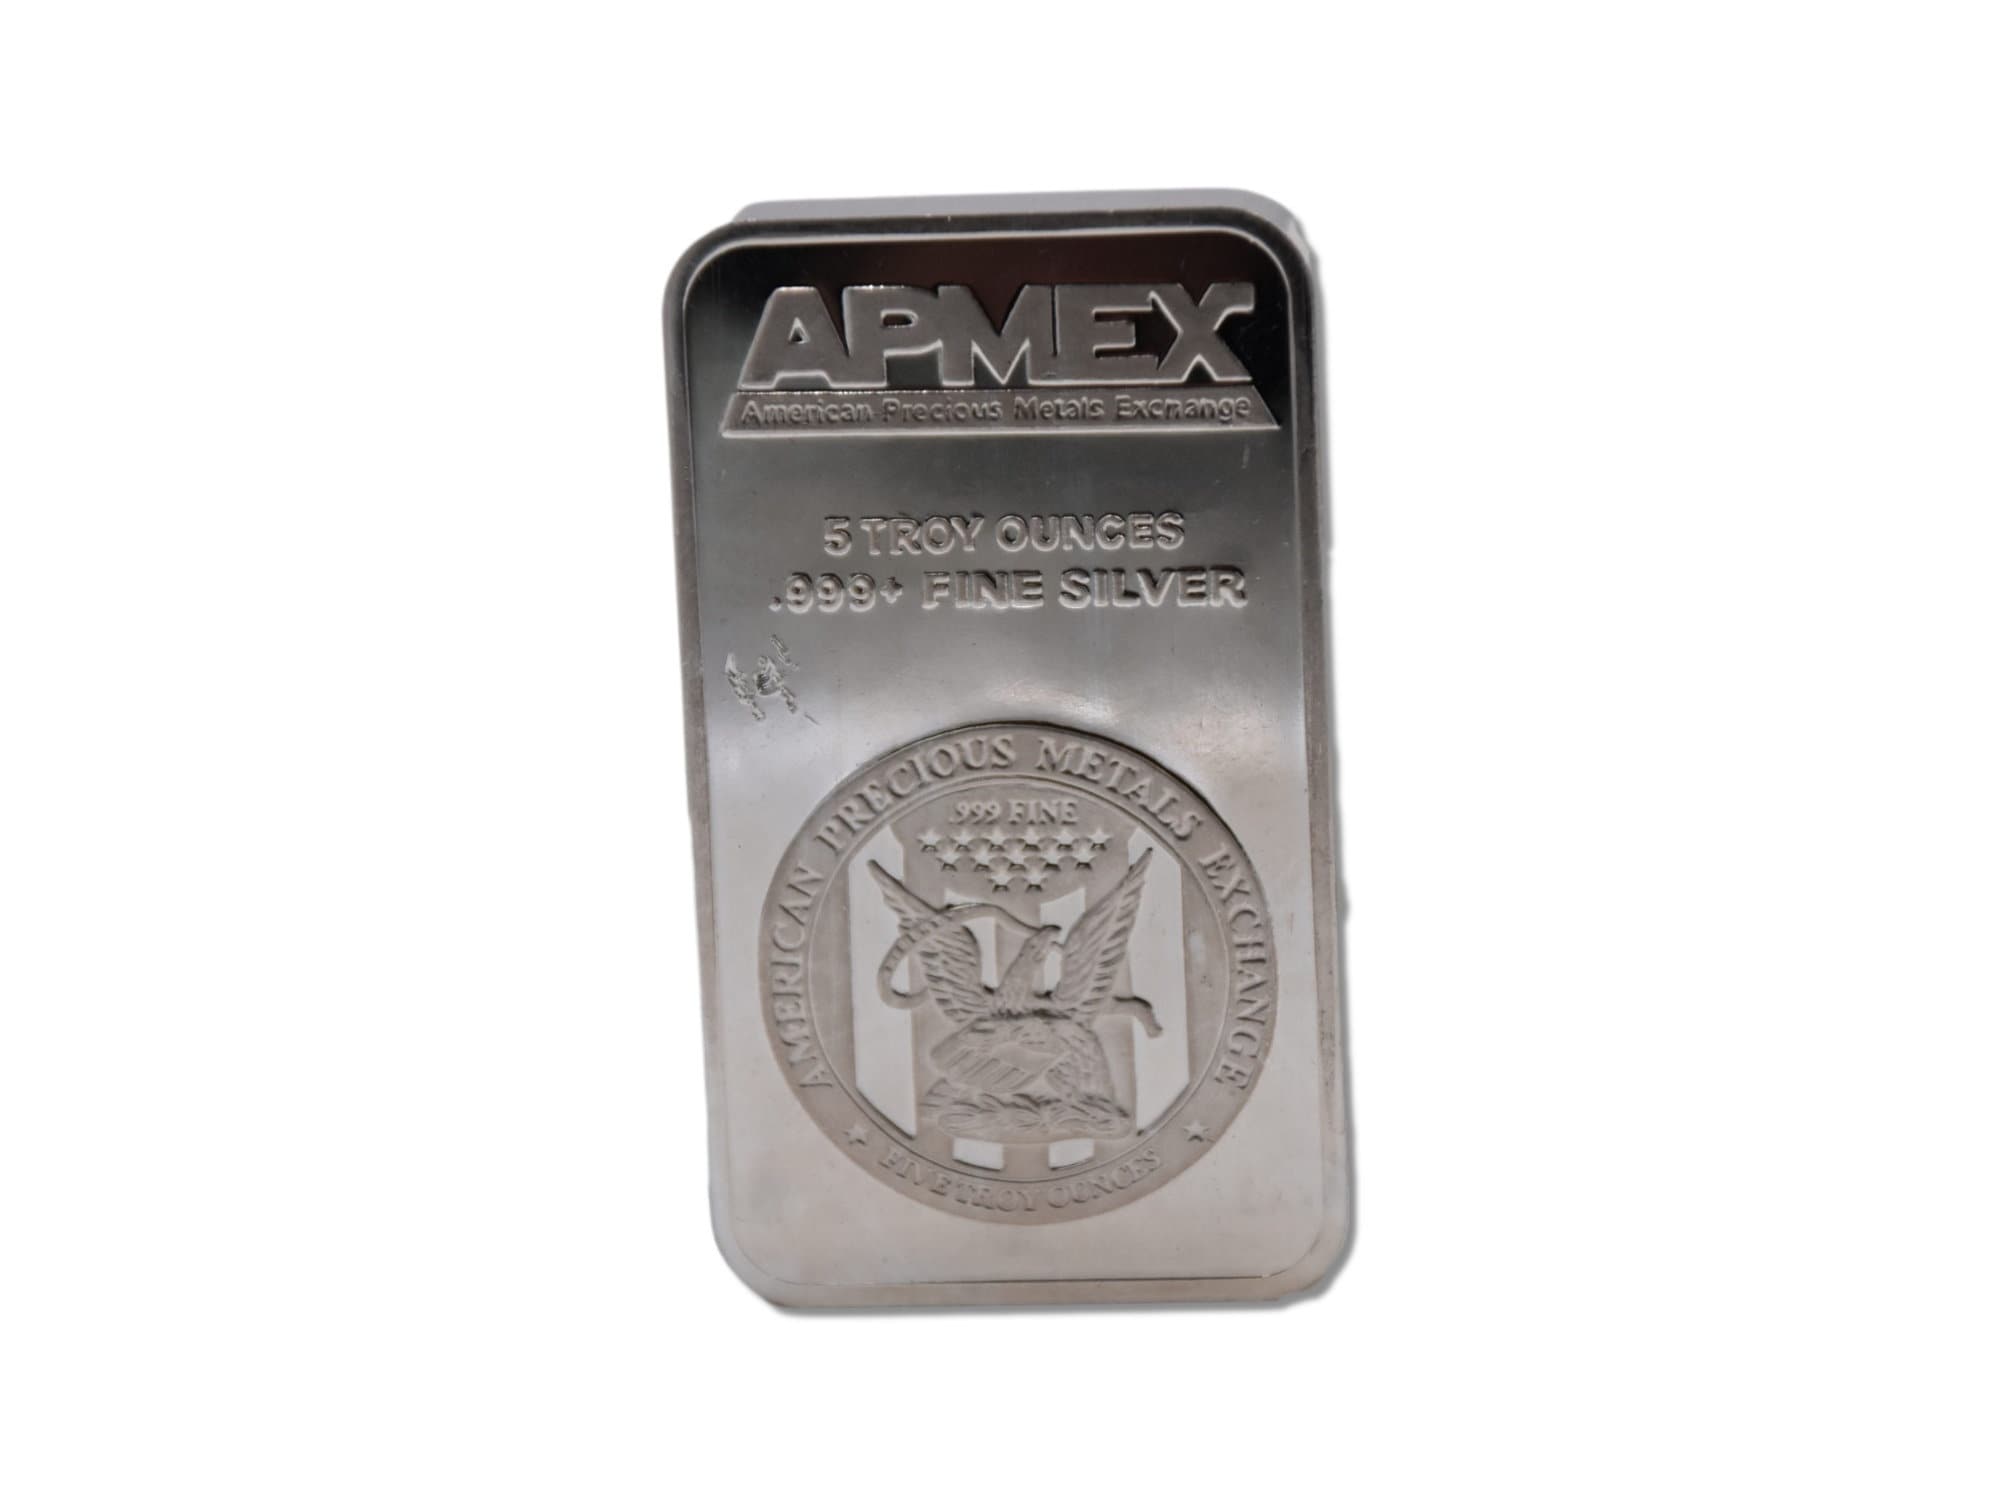 1 oz Silver Bar - APMEX